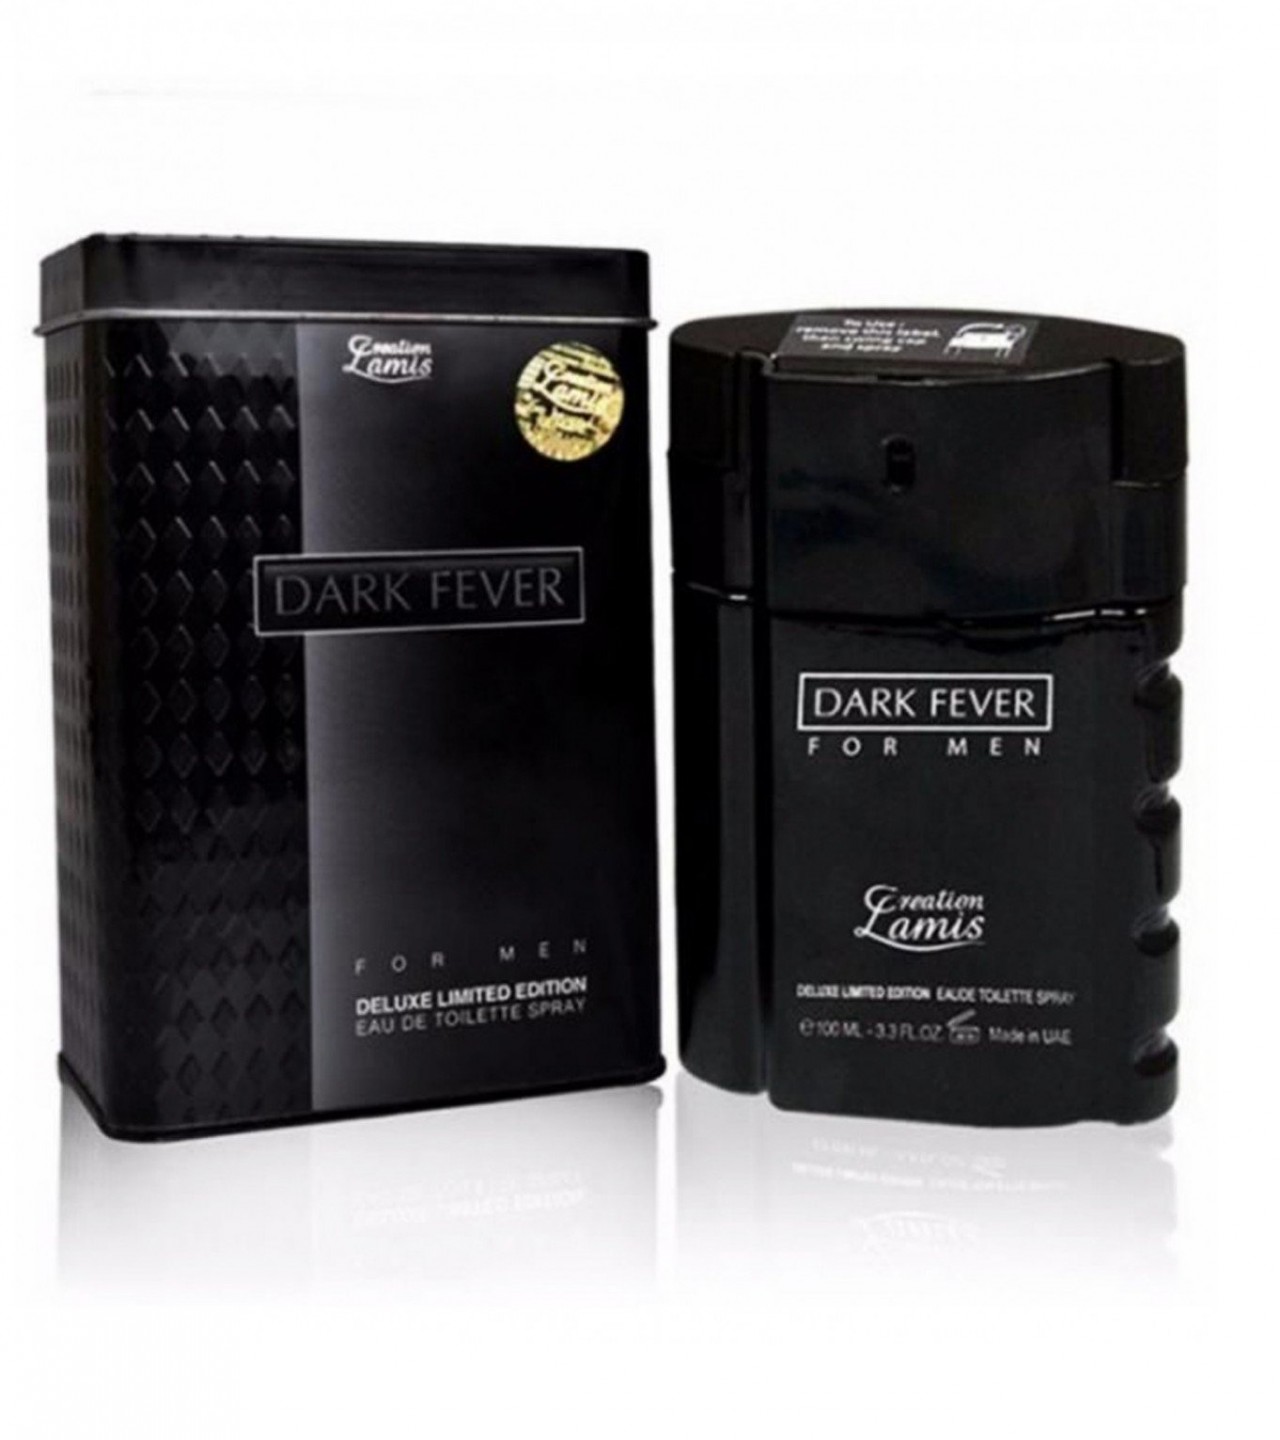 Creation Lamis Dark Fever Perfume For Men - 100 ml